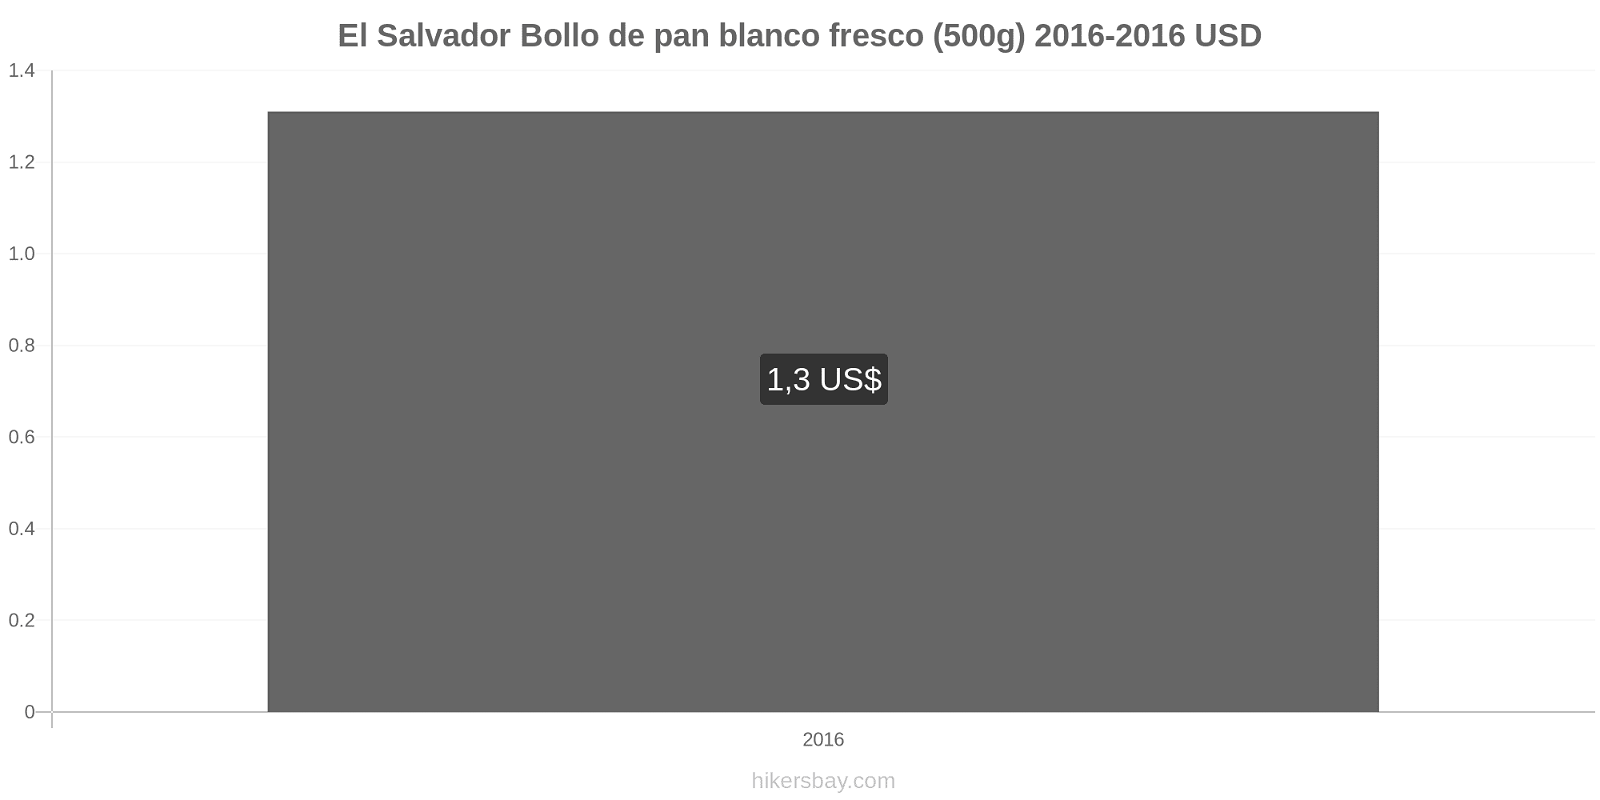 El Salvador cambios de precios Una barra de pan blanco fresco (500g) hikersbay.com